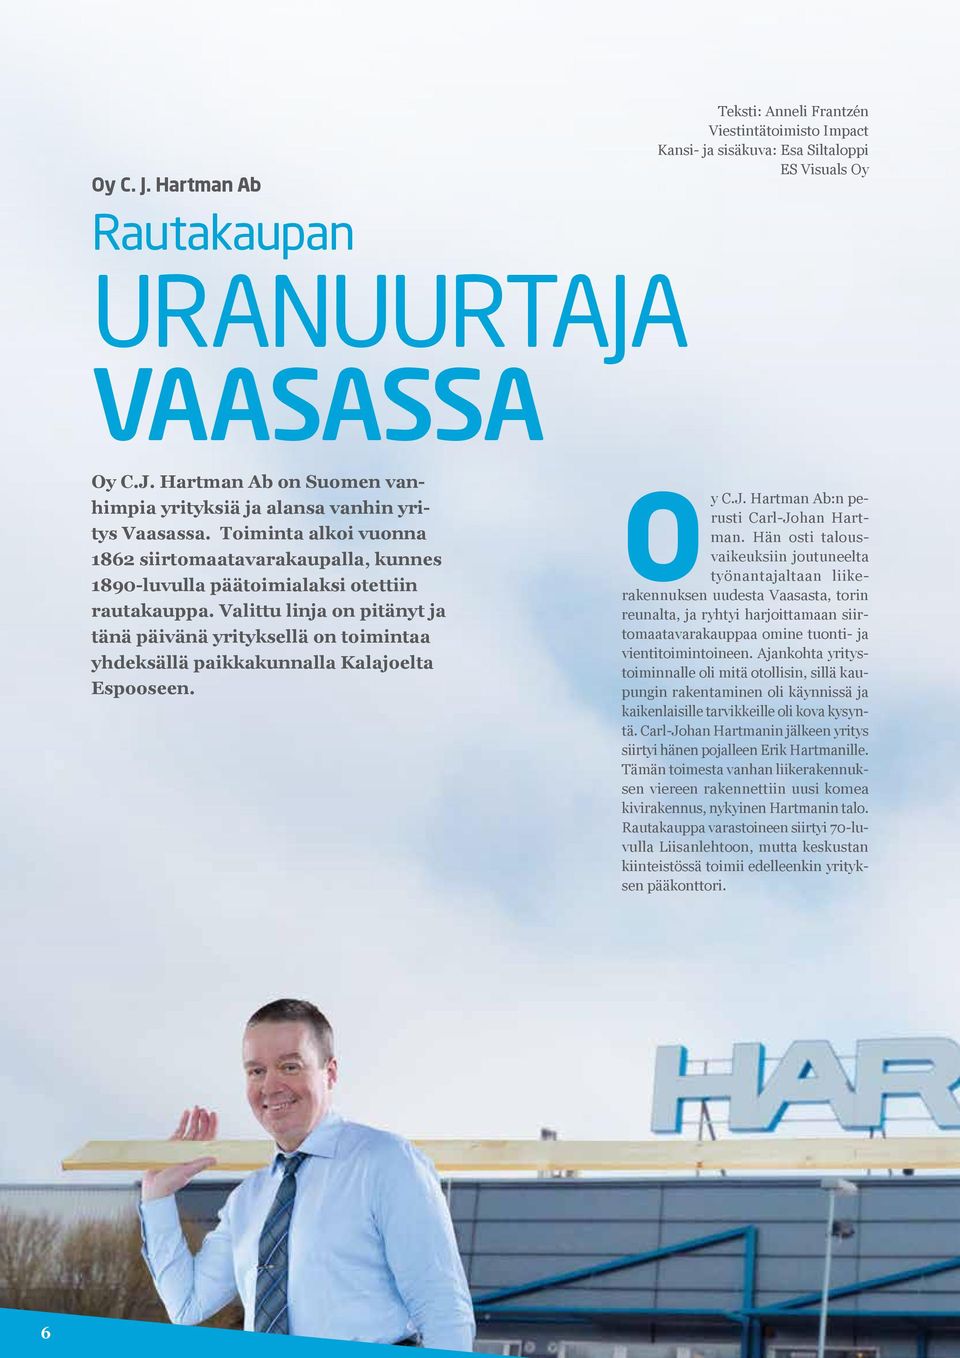 Valittu linja on pitänyt ja tänä päivänä yrityksellä on toimintaa yhdeksällä paikkakunnalla Kalajoelta Espooseen. Oy C.J. Hartman Ab:n perusti Carl-Johan Hartman.